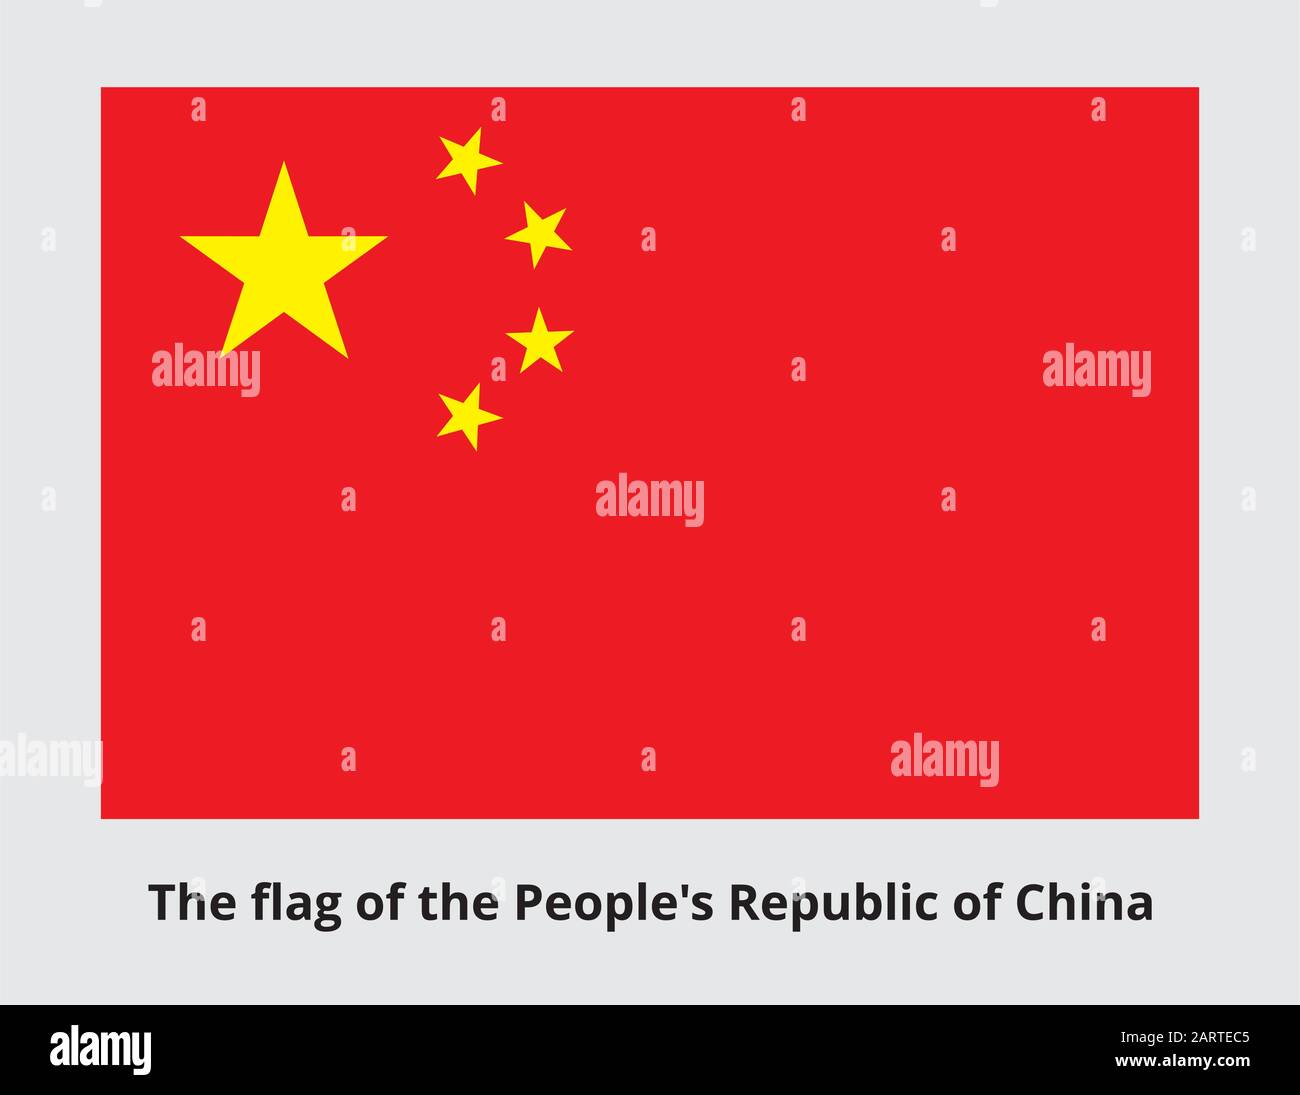 Bandiera nazionale della Repubblica popolare Cinese. Il banner rosso caricato nel cantone con cinque stelle dorate. Colori e proporzioni ufficiali. V Illustrazione Vettoriale